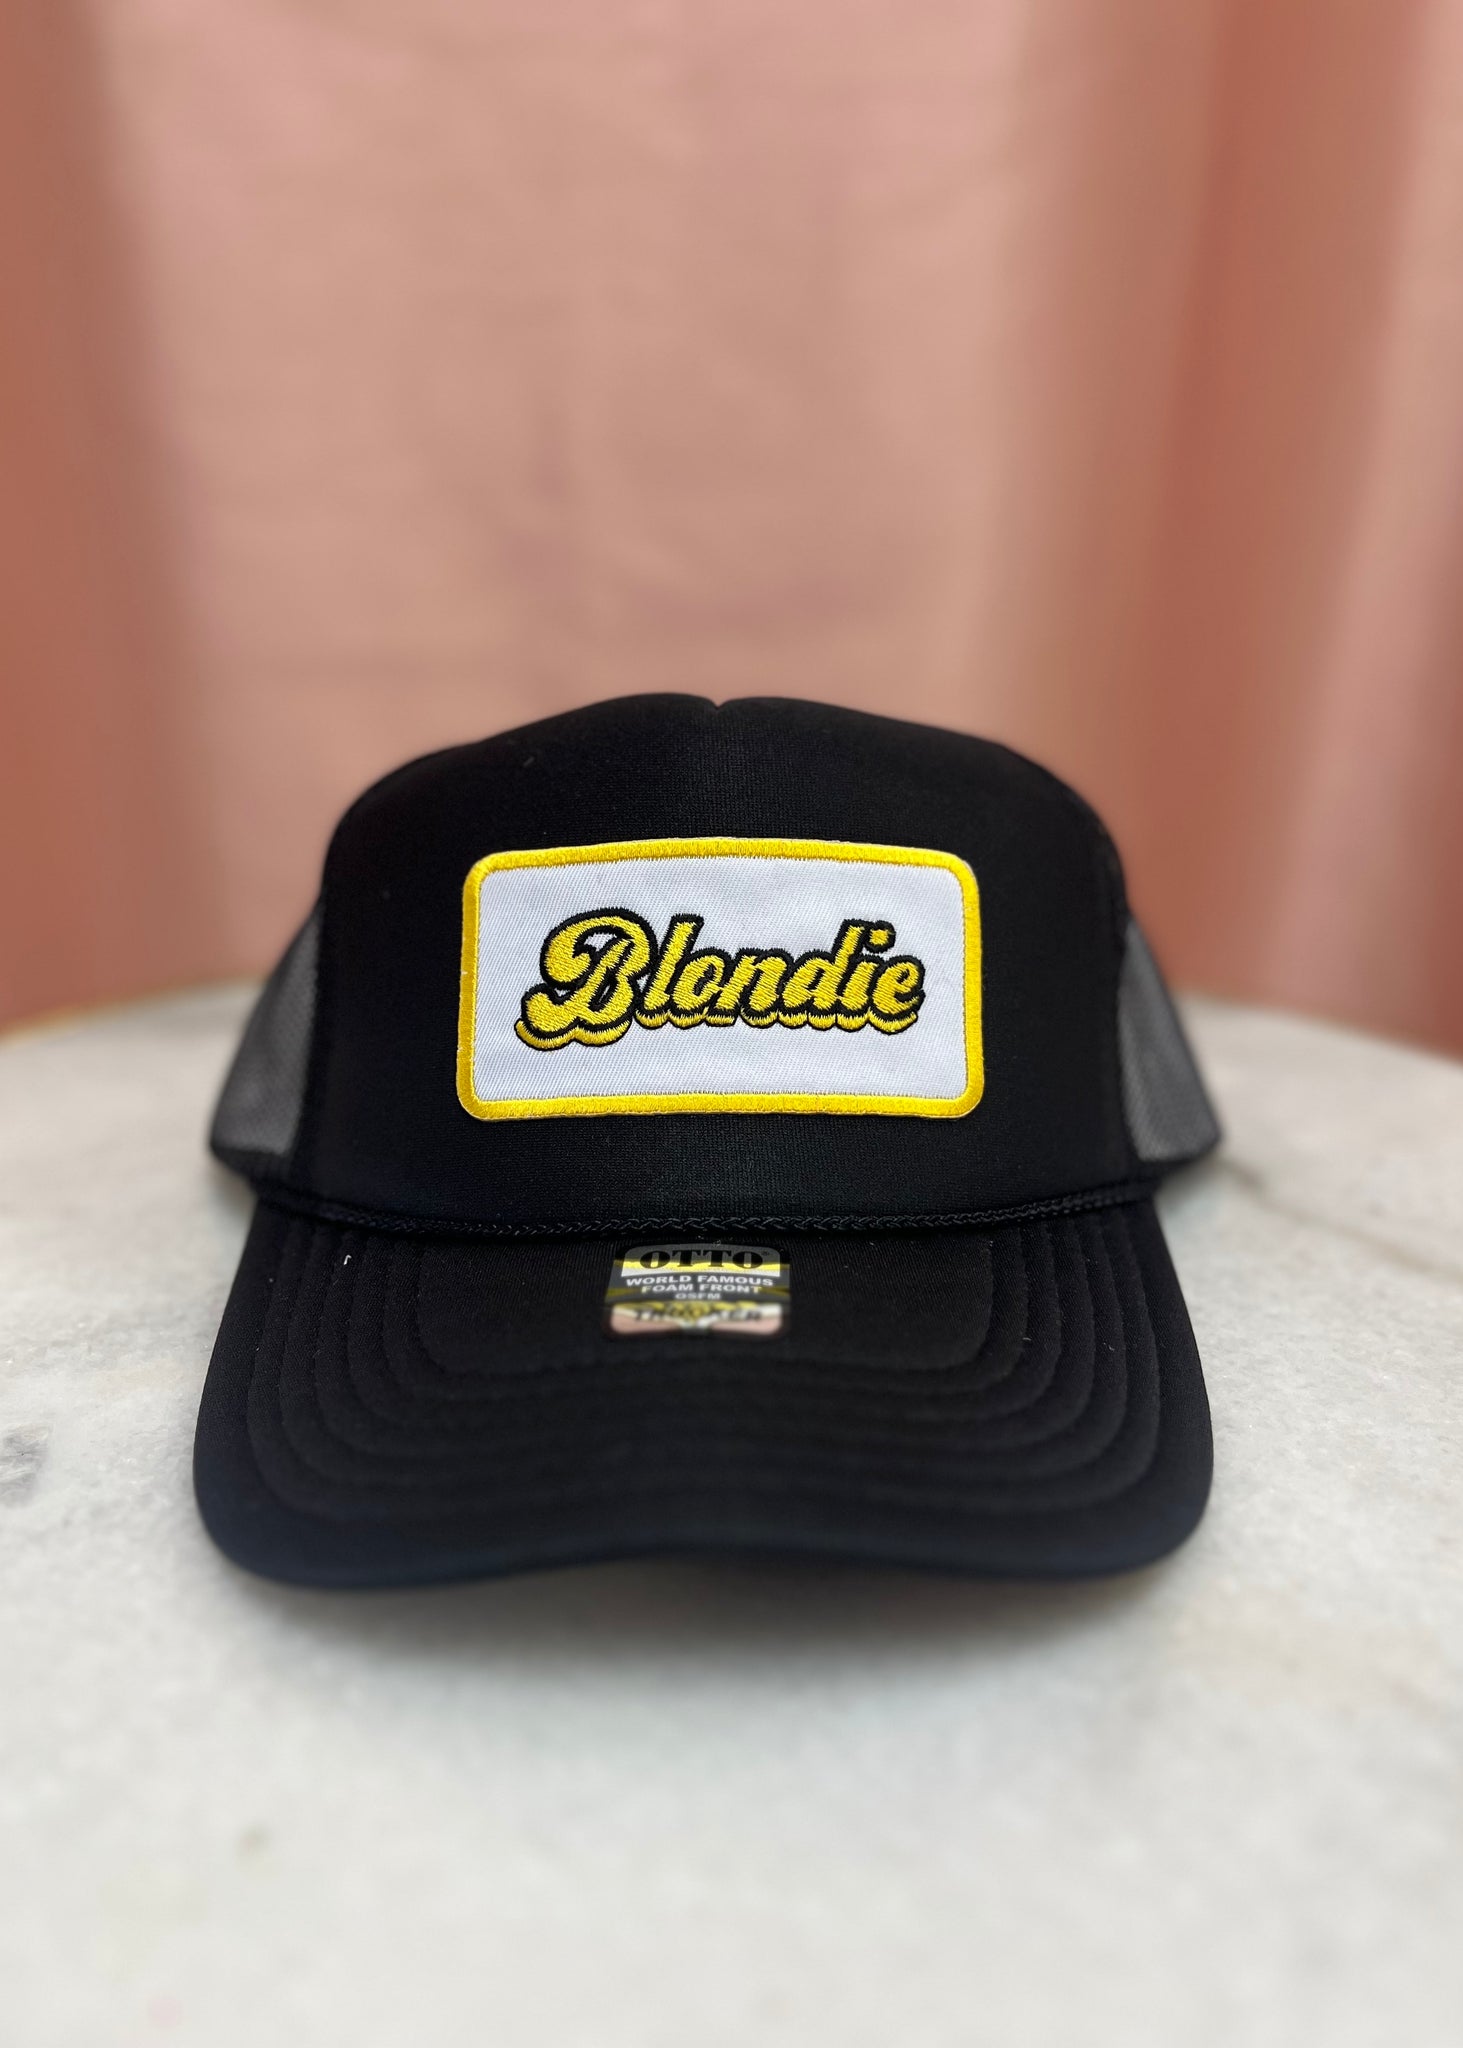 "Blondie" Trucker Hat